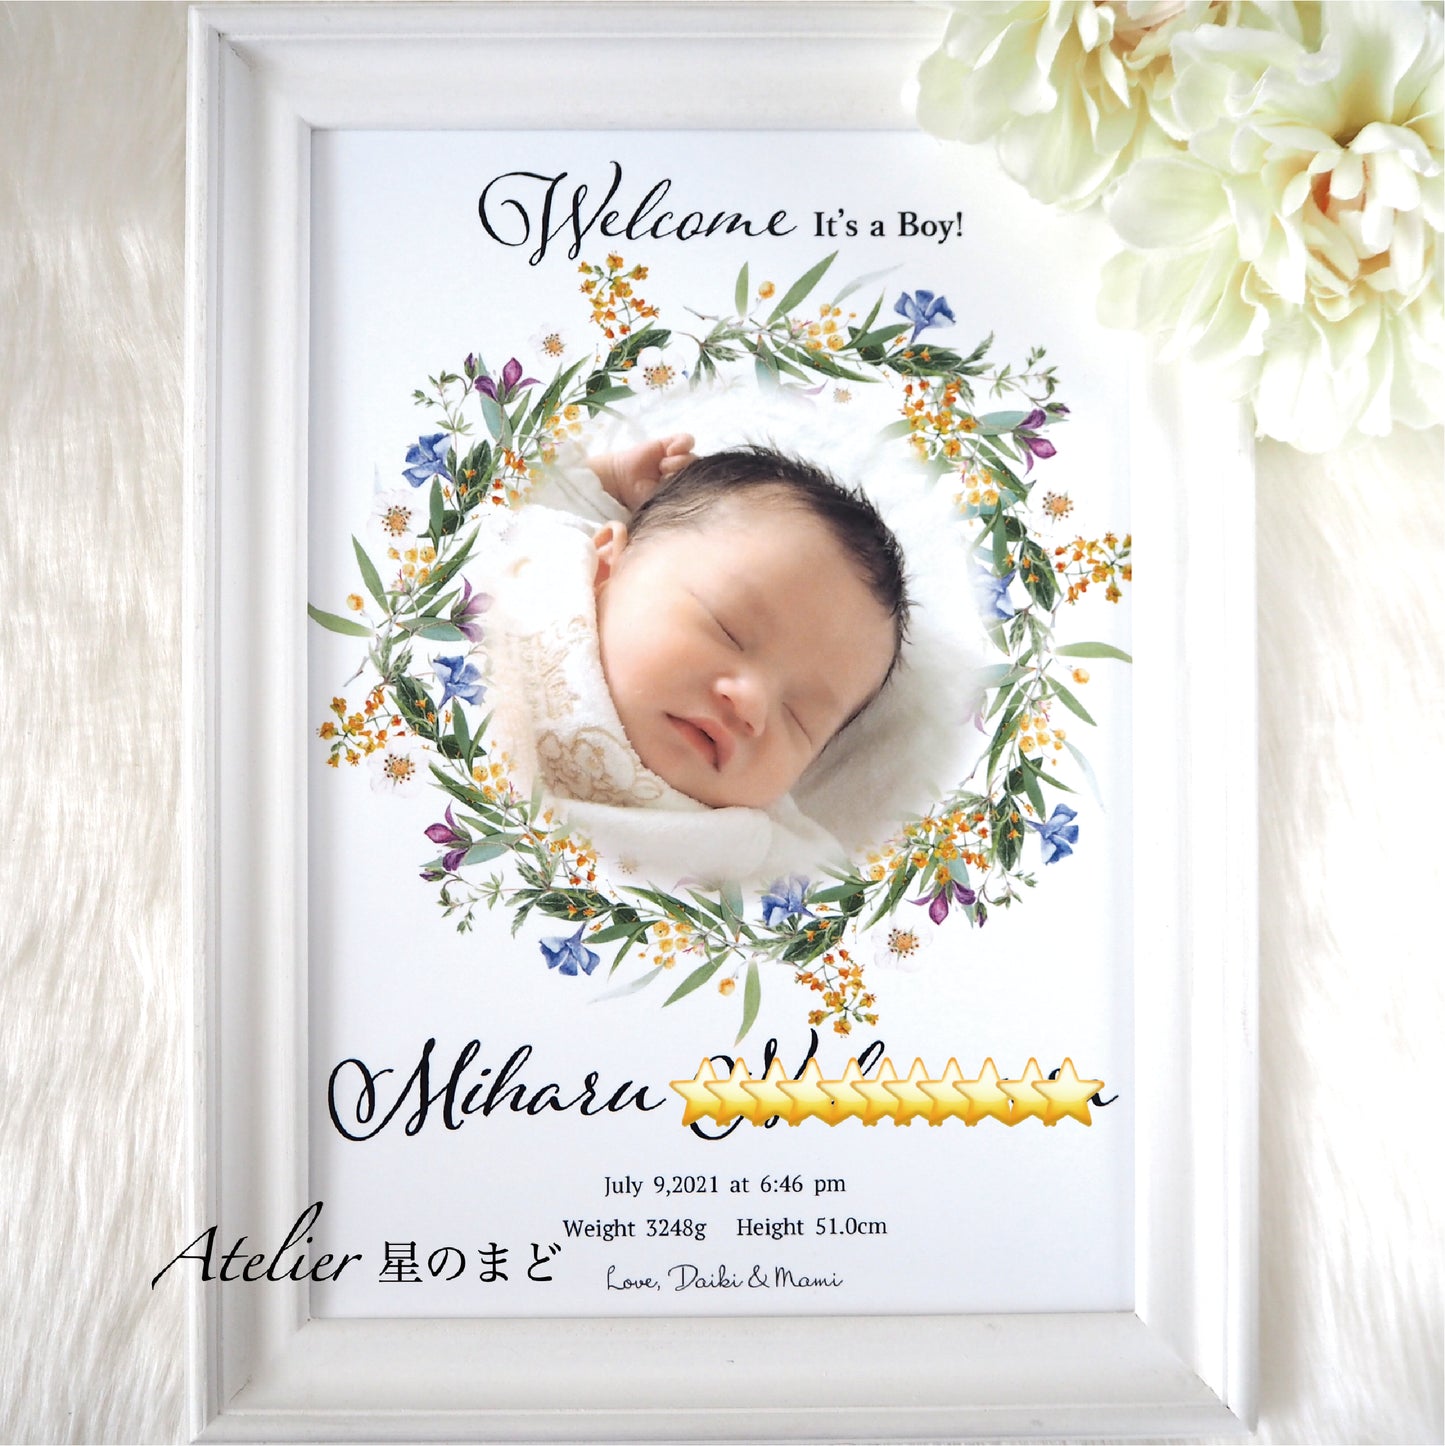 メモリアルポスター 赤ちゃんの記念に　お洒落で可愛い命名書 　ミモザと野花のリースに包まれて　プラチナグレード光沢紙で美しさ長持ち